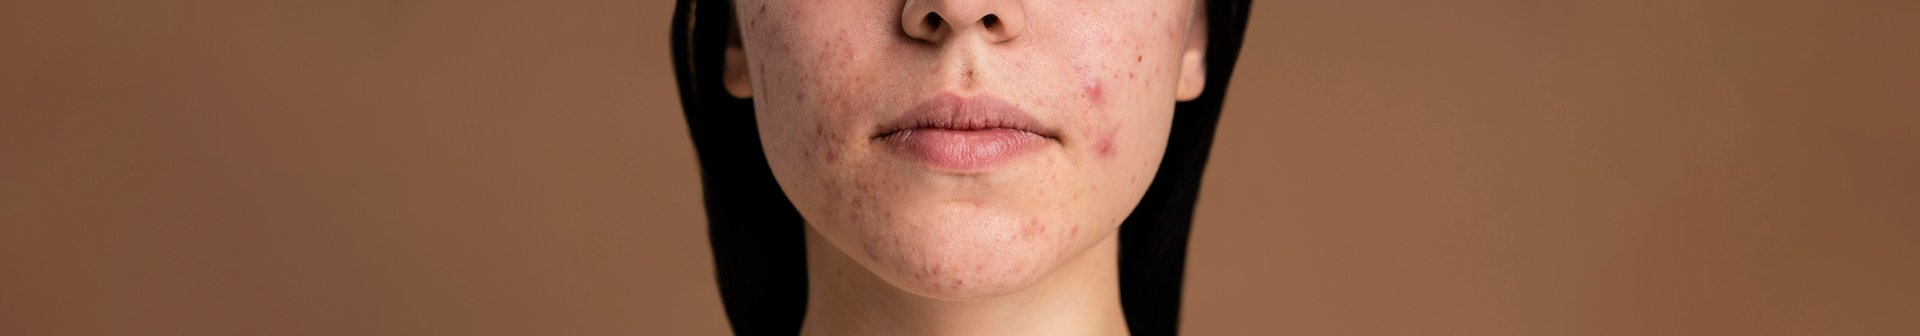 Gesichtsausschnitt einer jungen Frau mit Hautunreinheiten